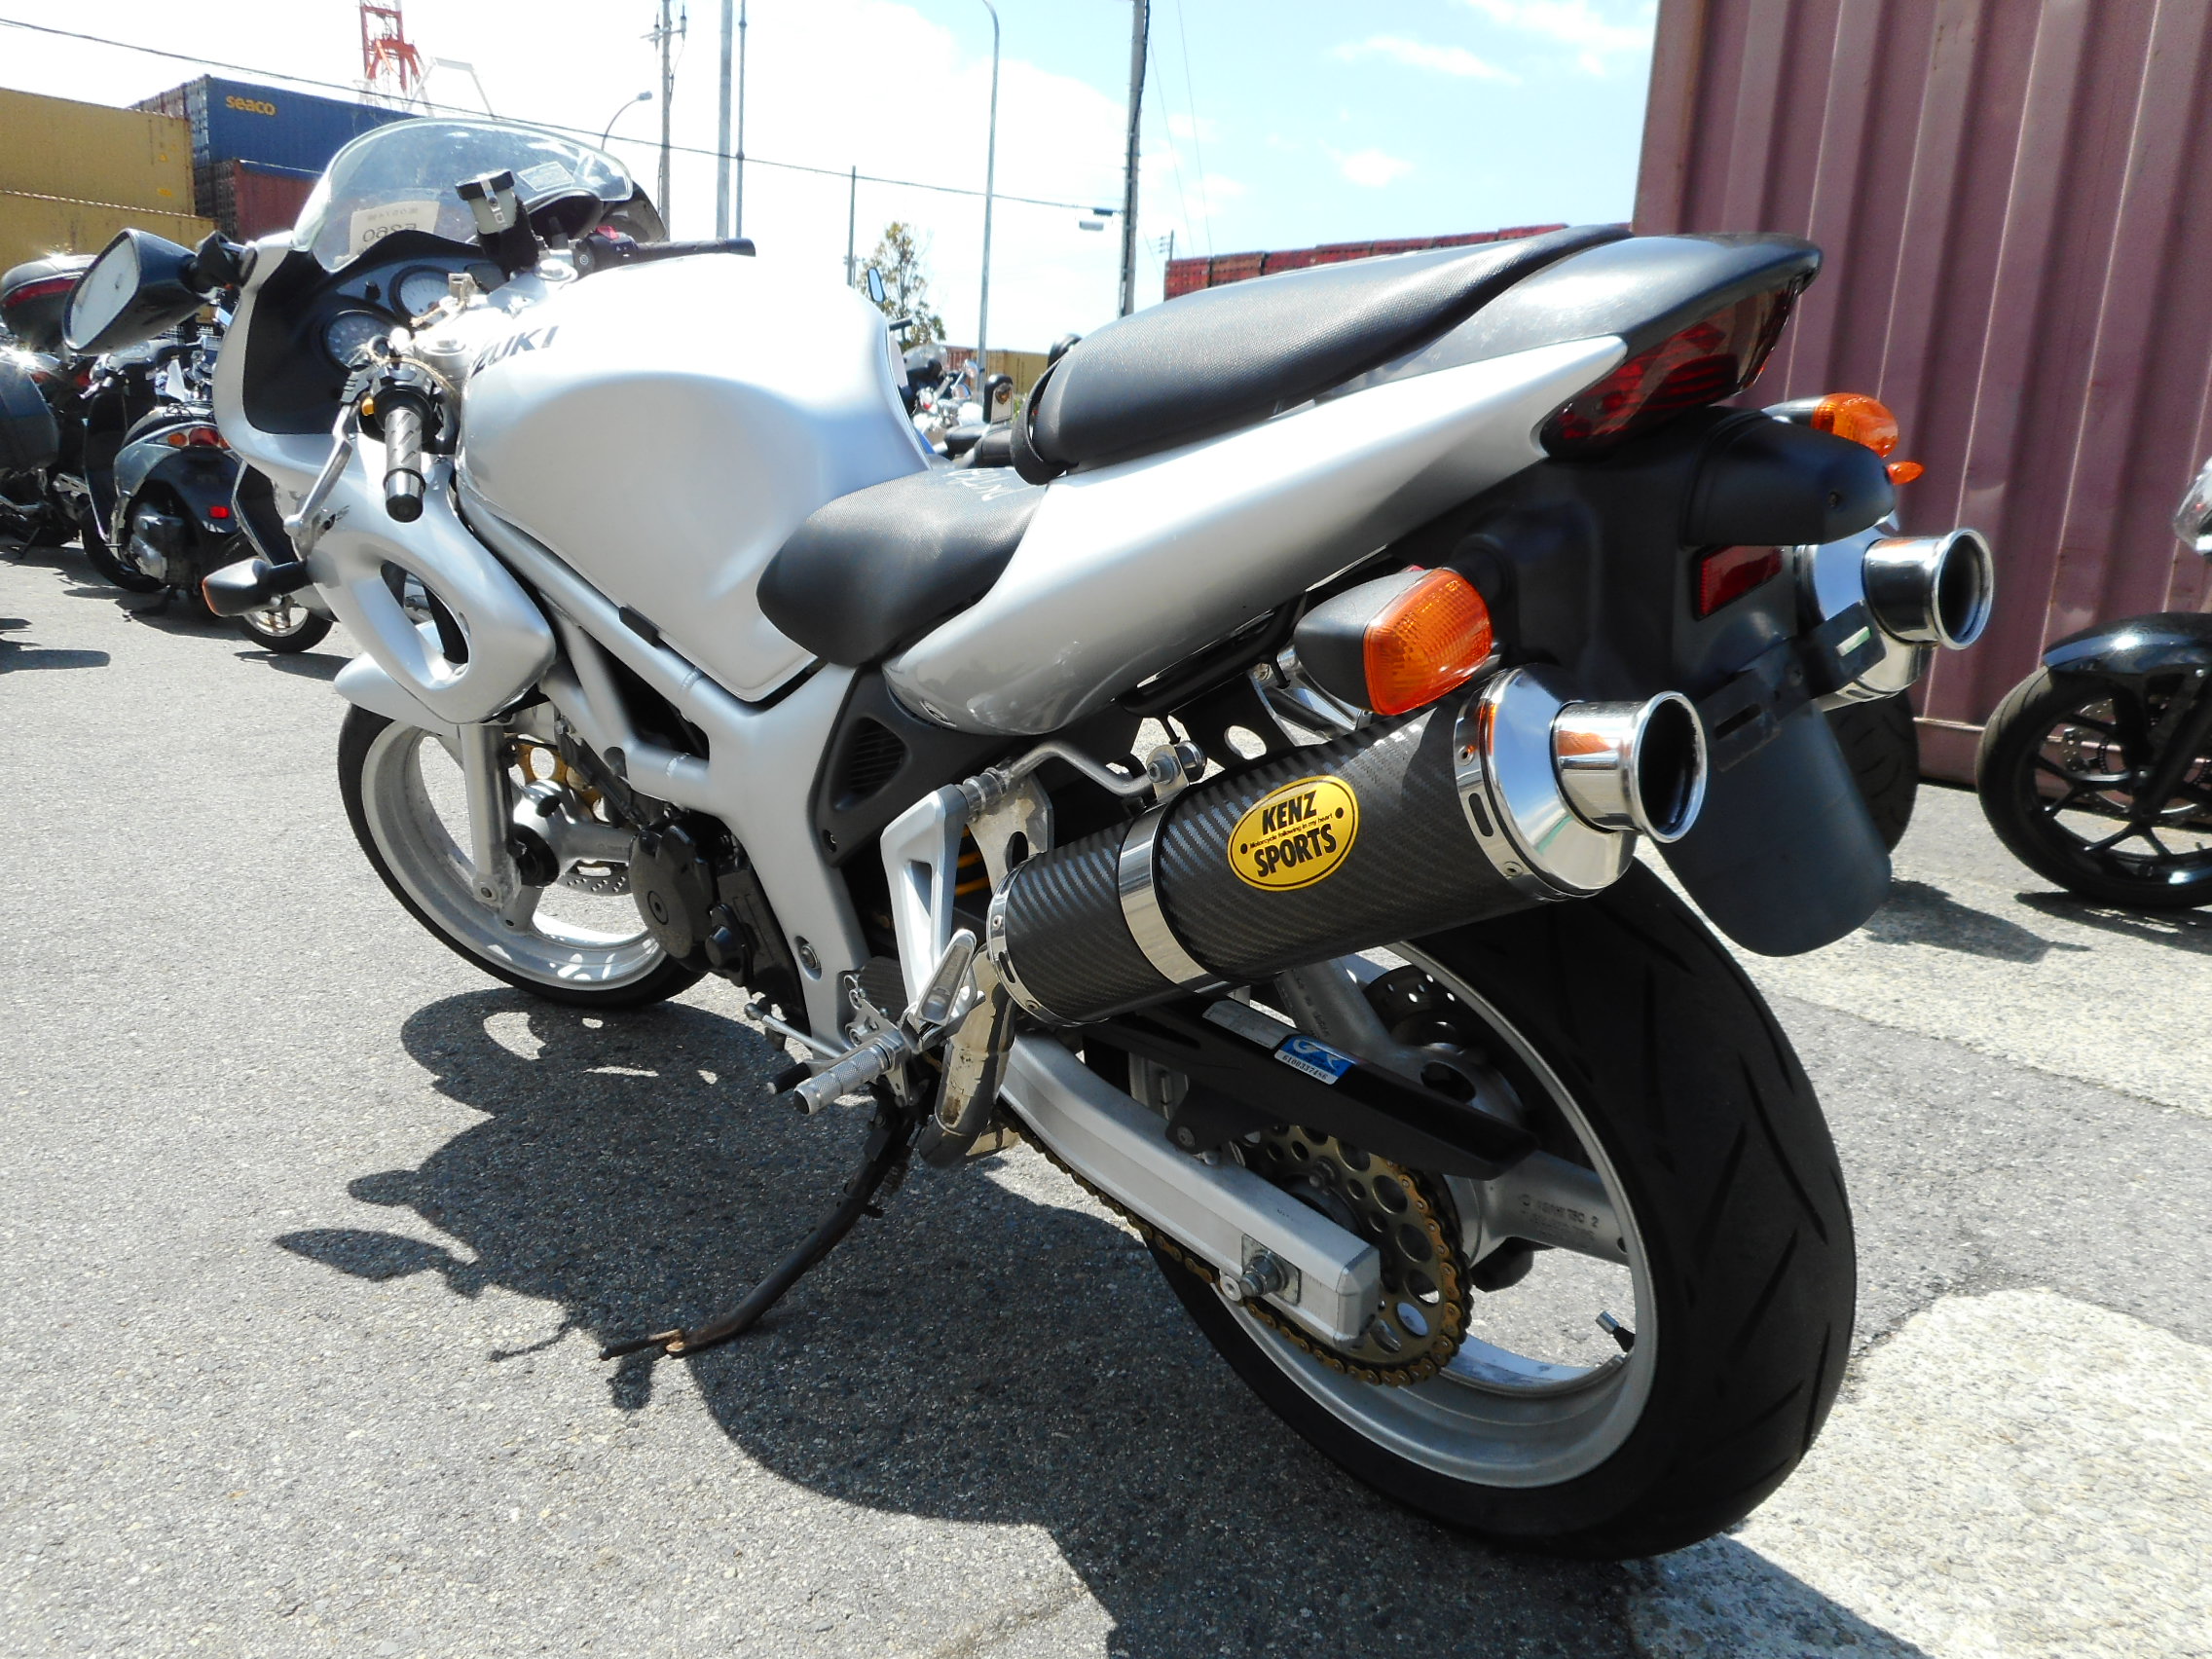 Мотоцикл Suzuki (Сузуки) SV 400S — обзор